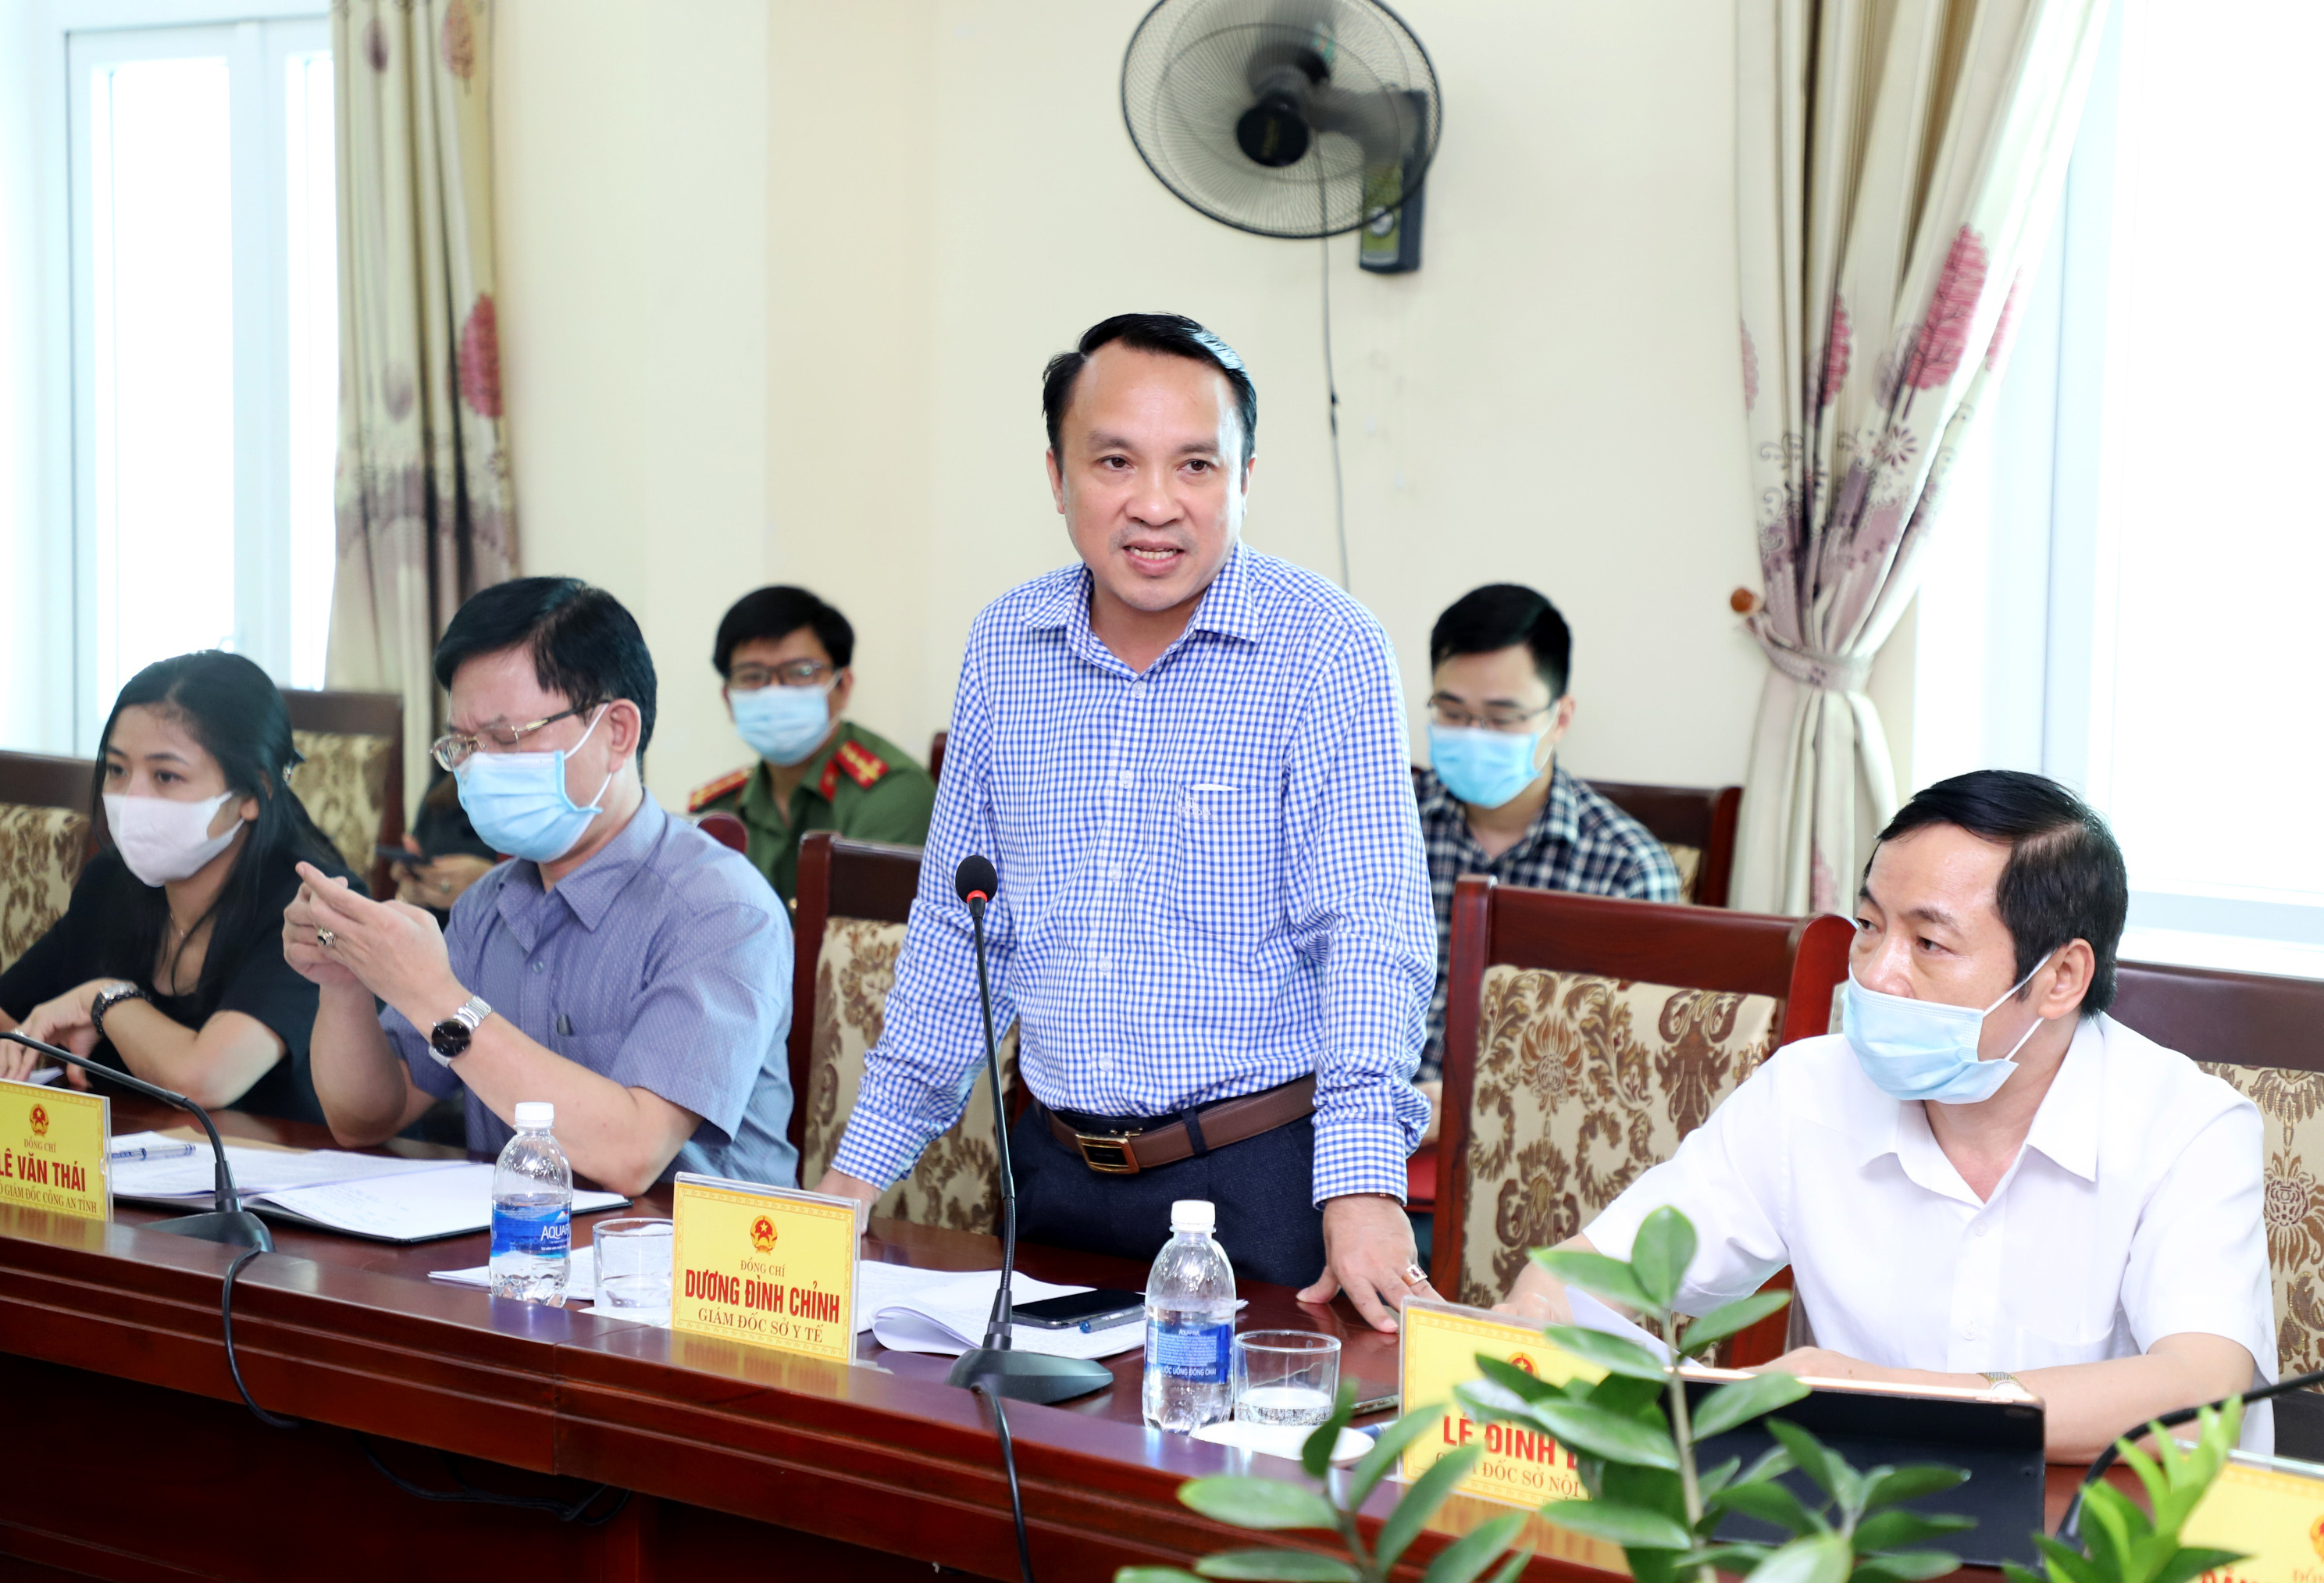 Đồng chí Dương Đình Chỉnh - Giám đốc Sở Y tế phát biểu tại buổi kiểm tra. Ảnh: Phạm Bằng